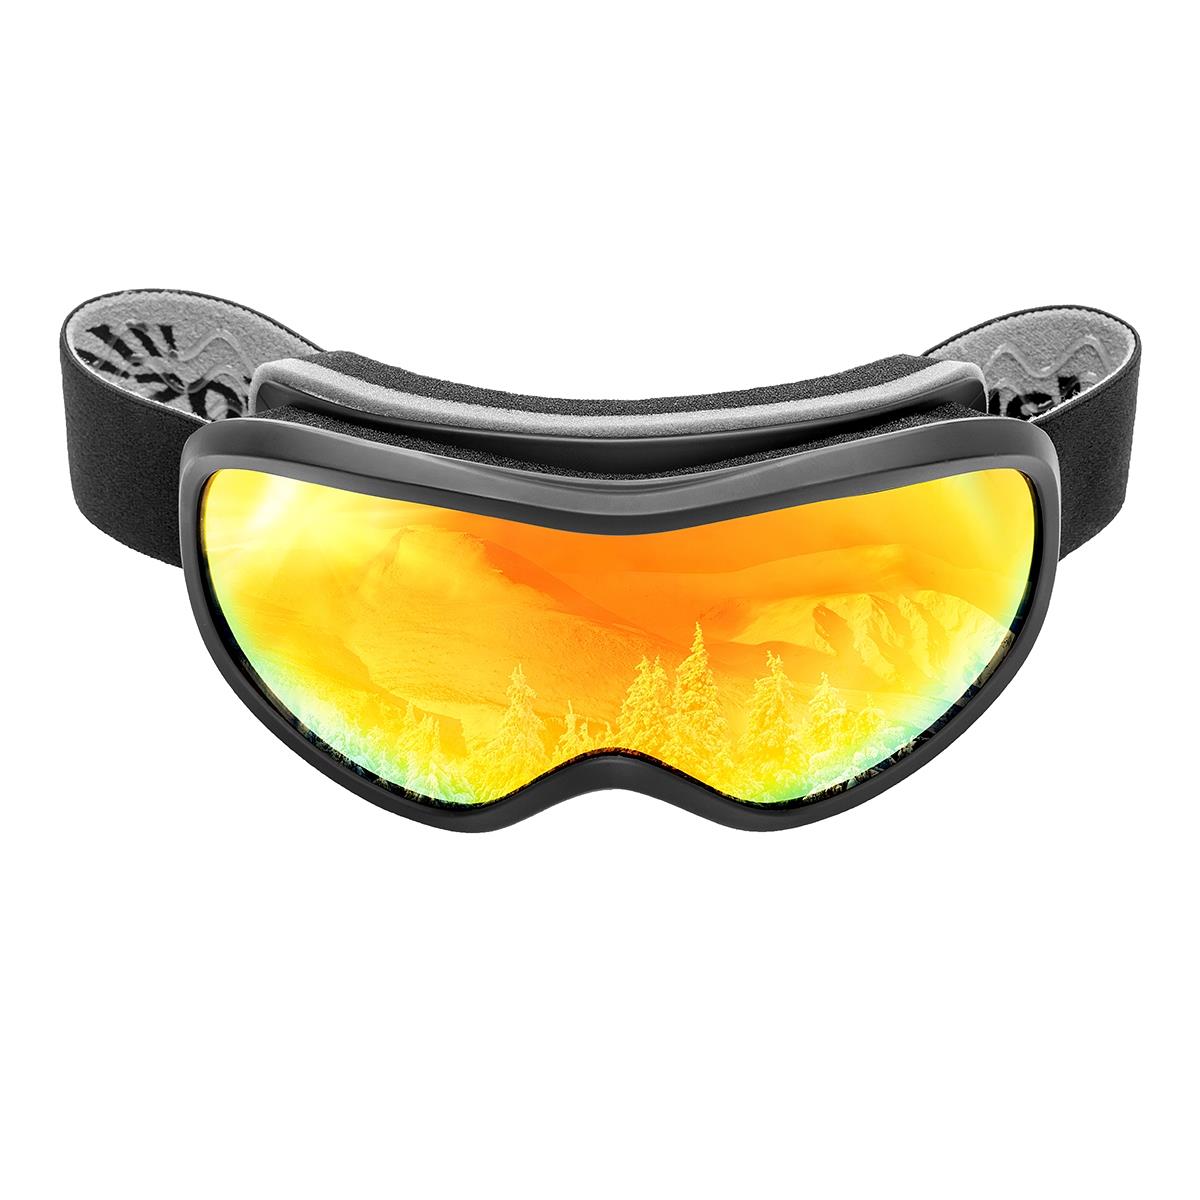 Очки горнолыжные HS-HX-043 Helios очки полумаска для плавания с берушами детские uv защита